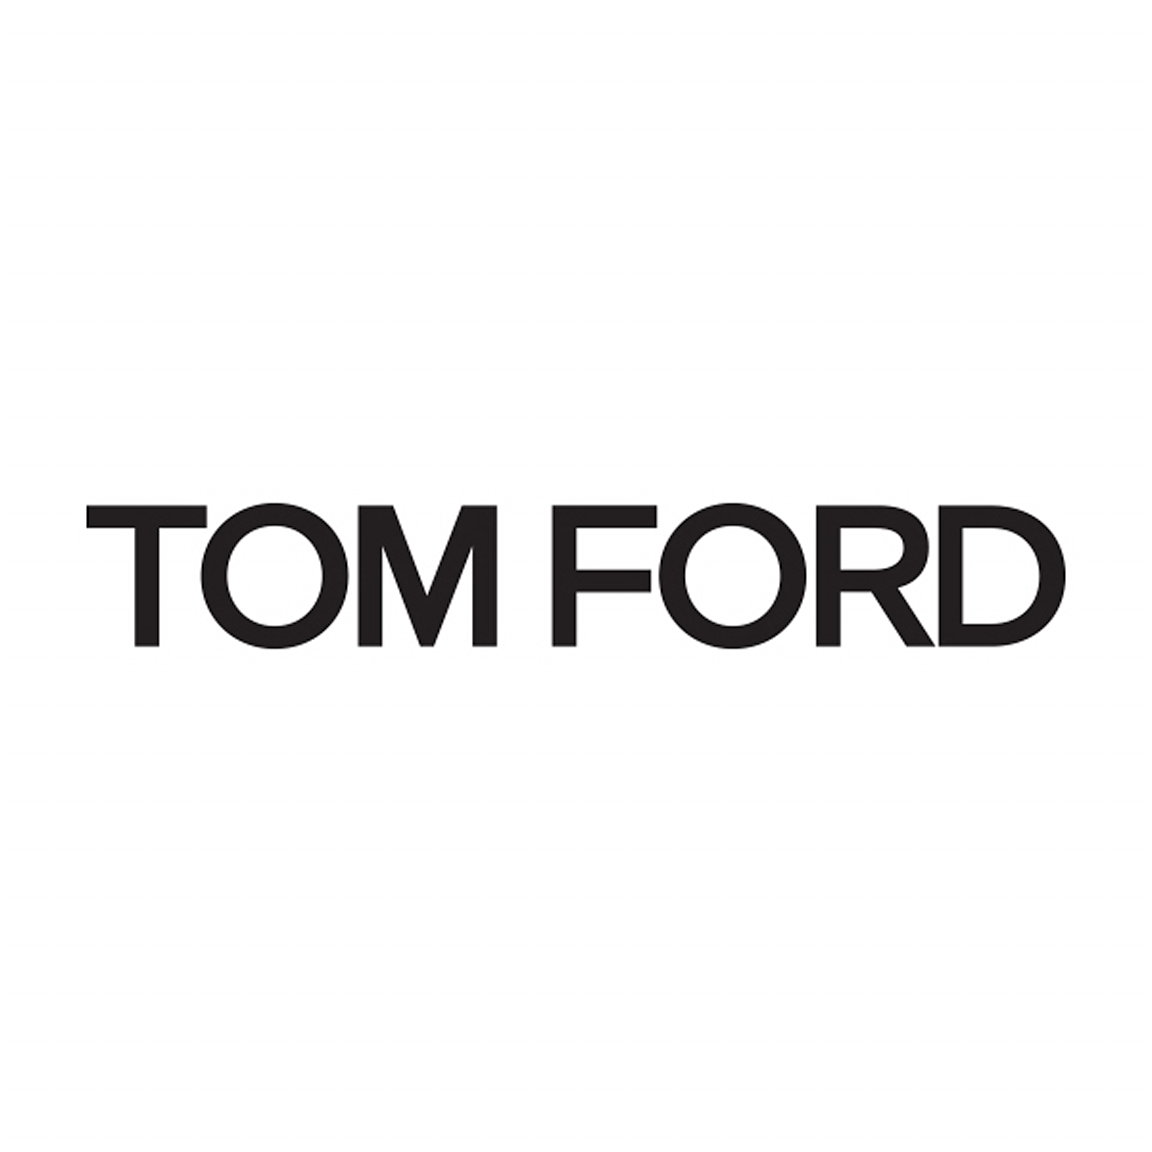 Tom Ford - Pitt Street Mall Sydney